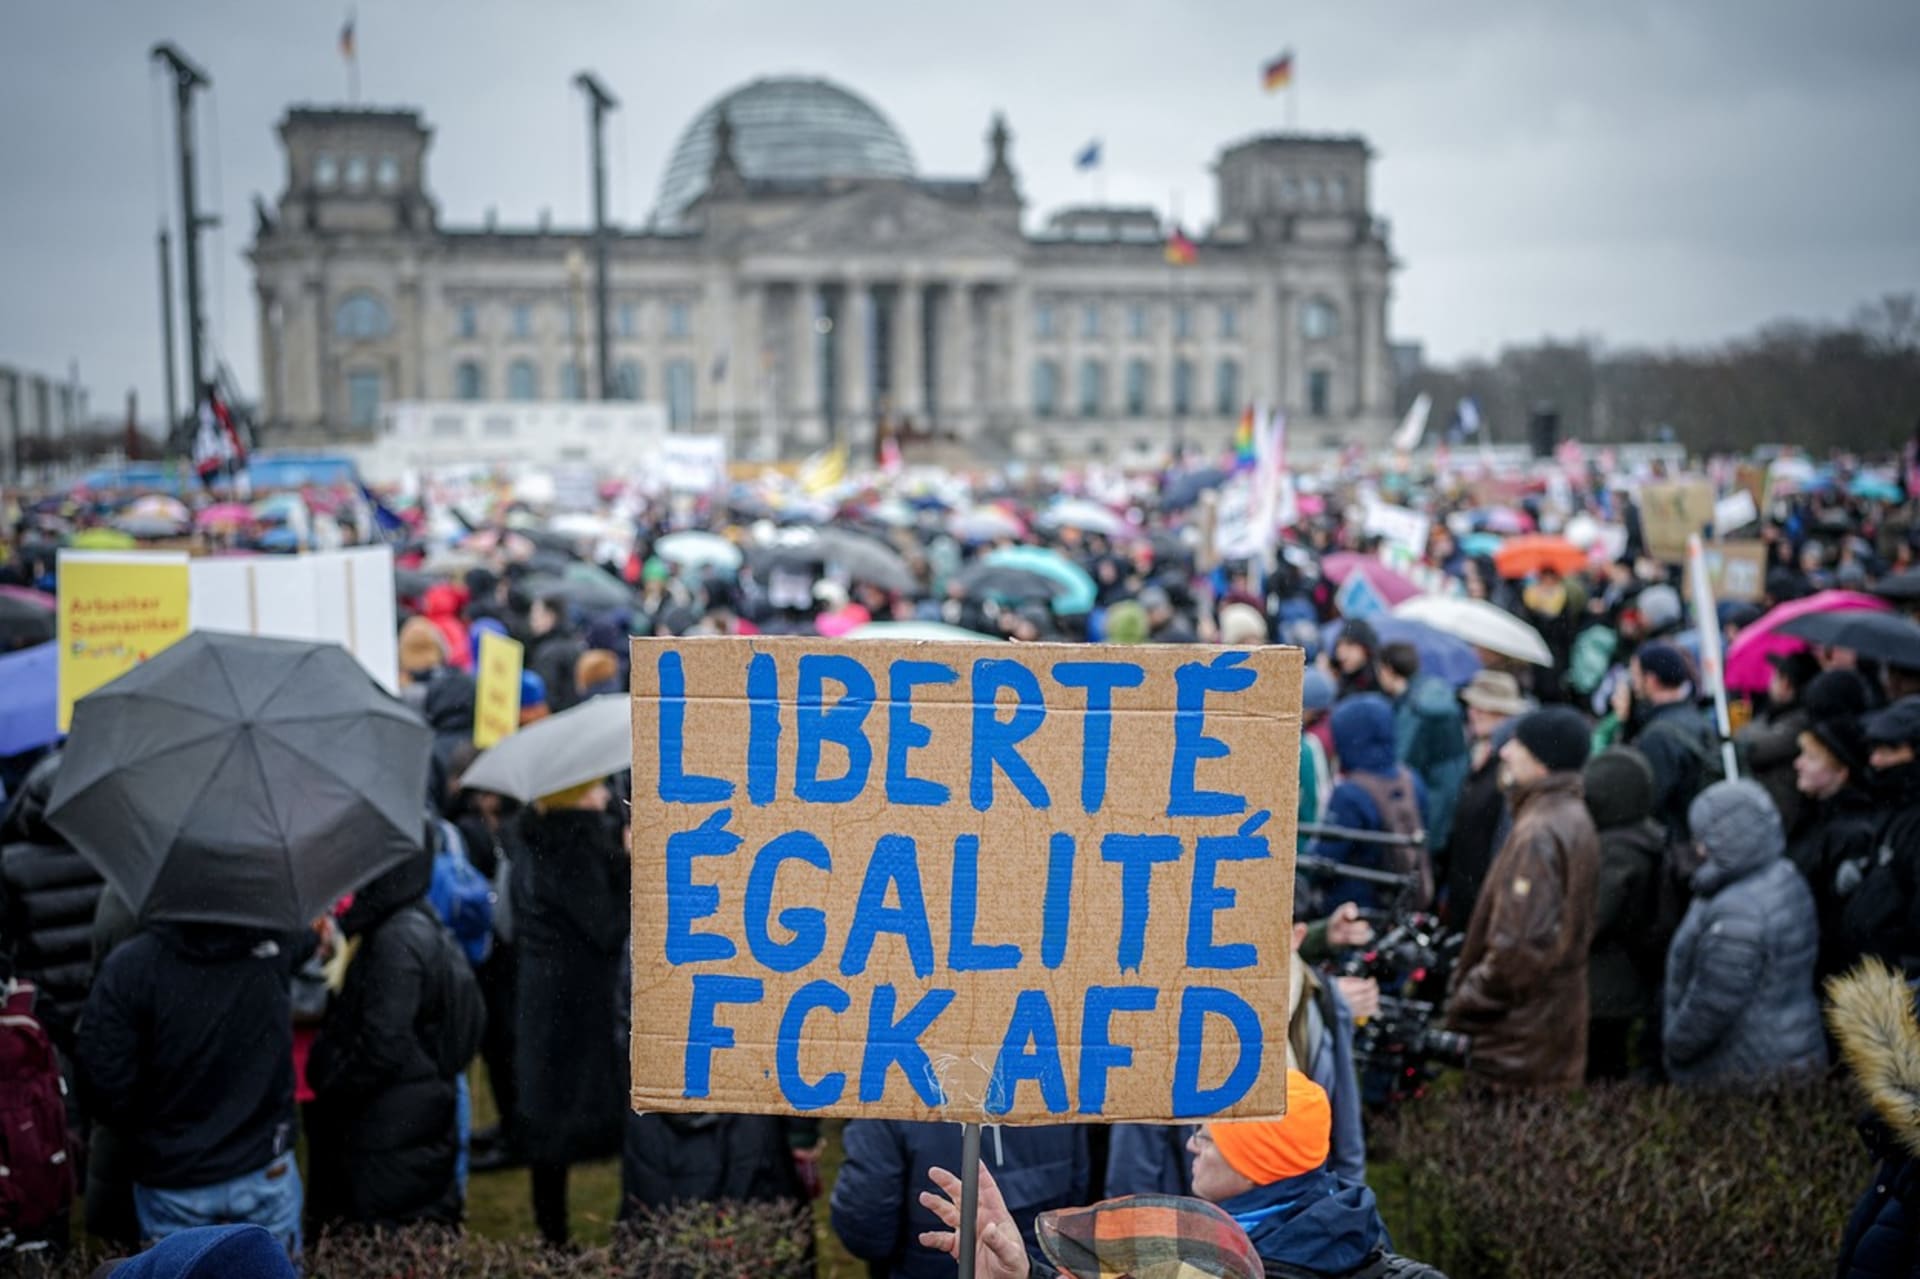 Na protest proti pravicovému extremismu v Berlíně dorazilo 150 tisíc lidí